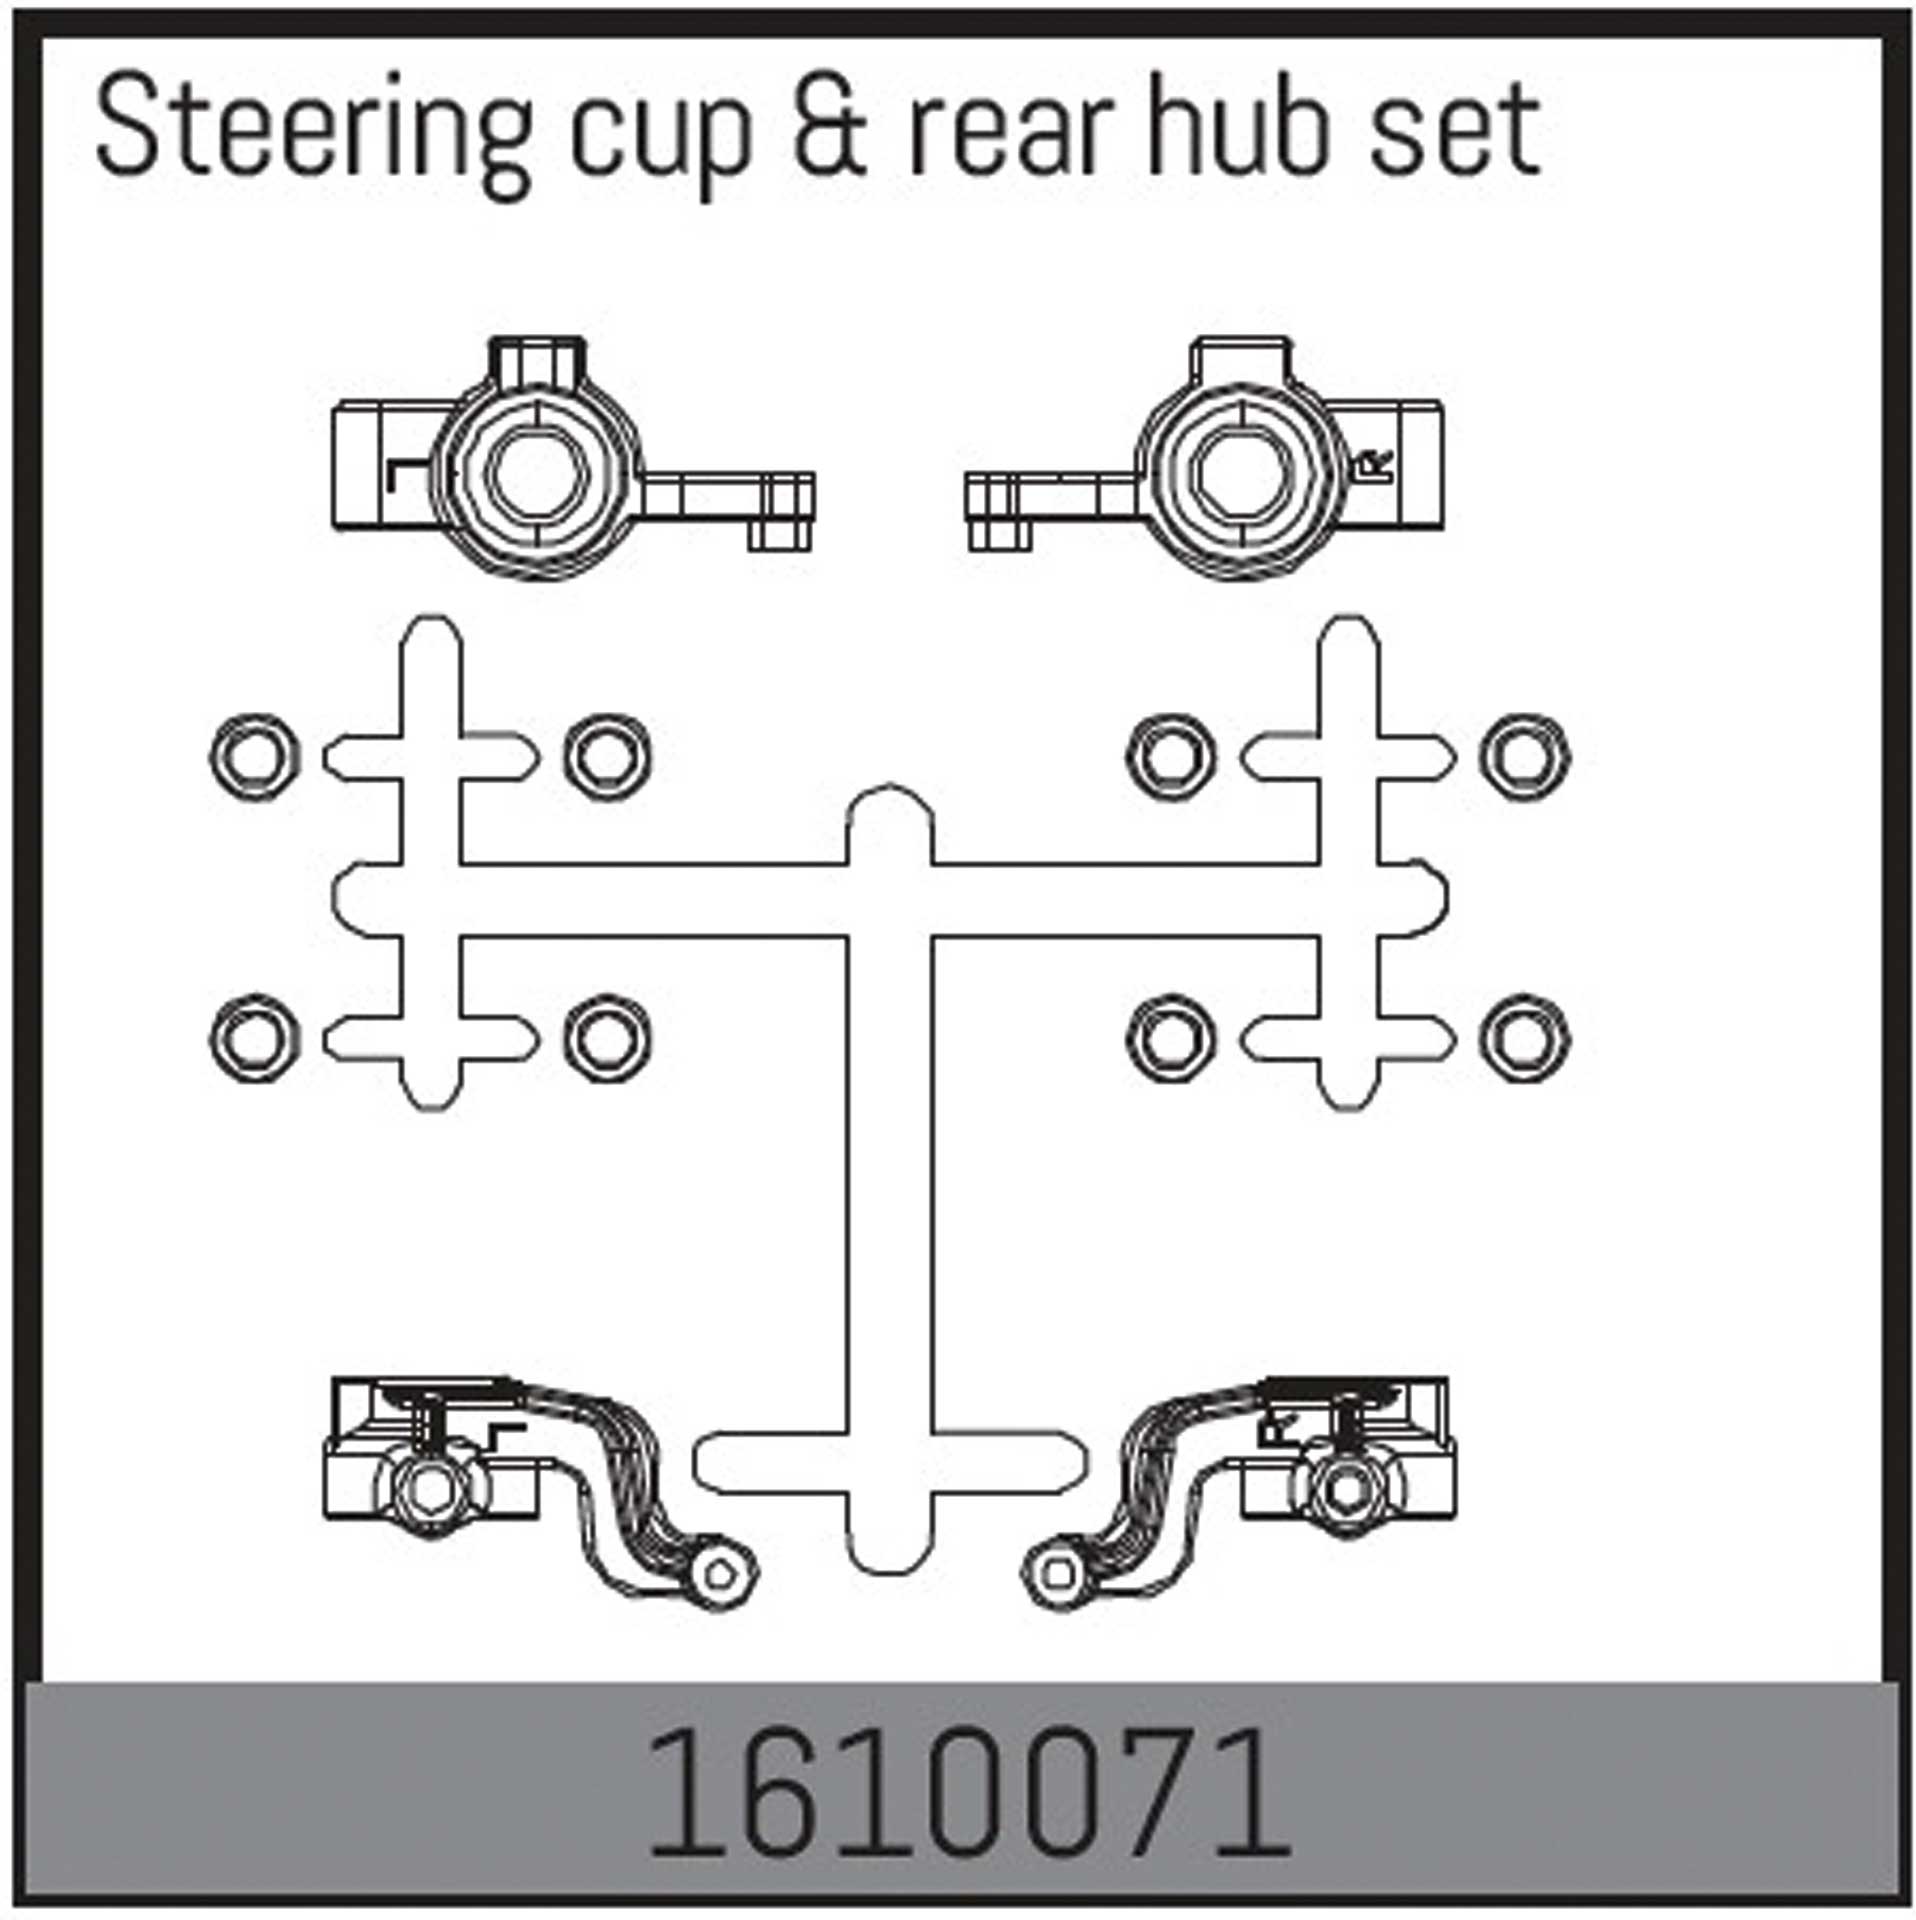 ABSIMA Steering cup & rear hub set